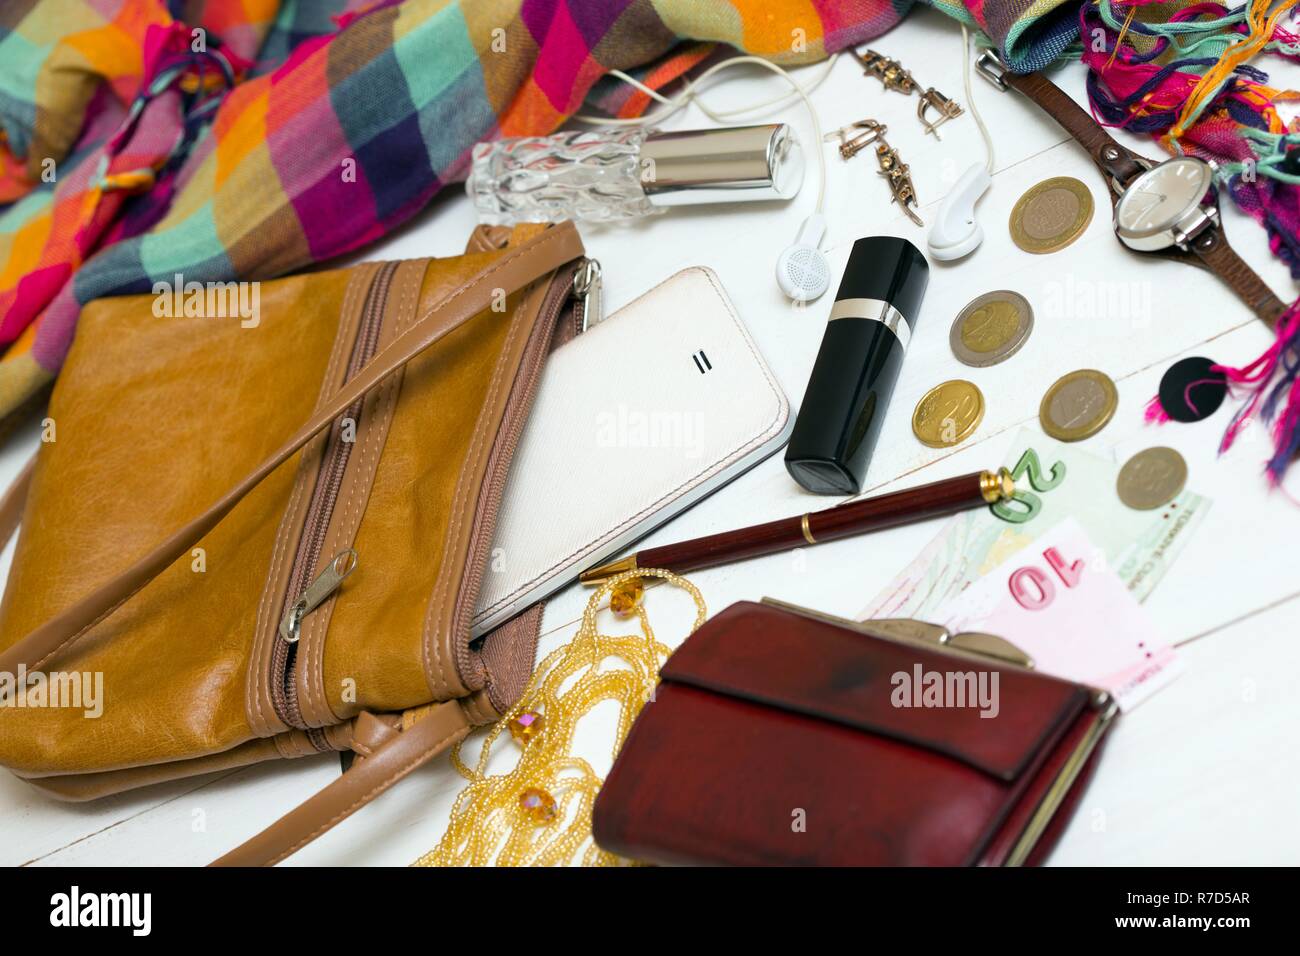 Der Inhalt der weiblichen Handtasche, Portemonnaie, Schlüssel, Handy,  Lippenstift, Parfum Stockfotografie - Alamy